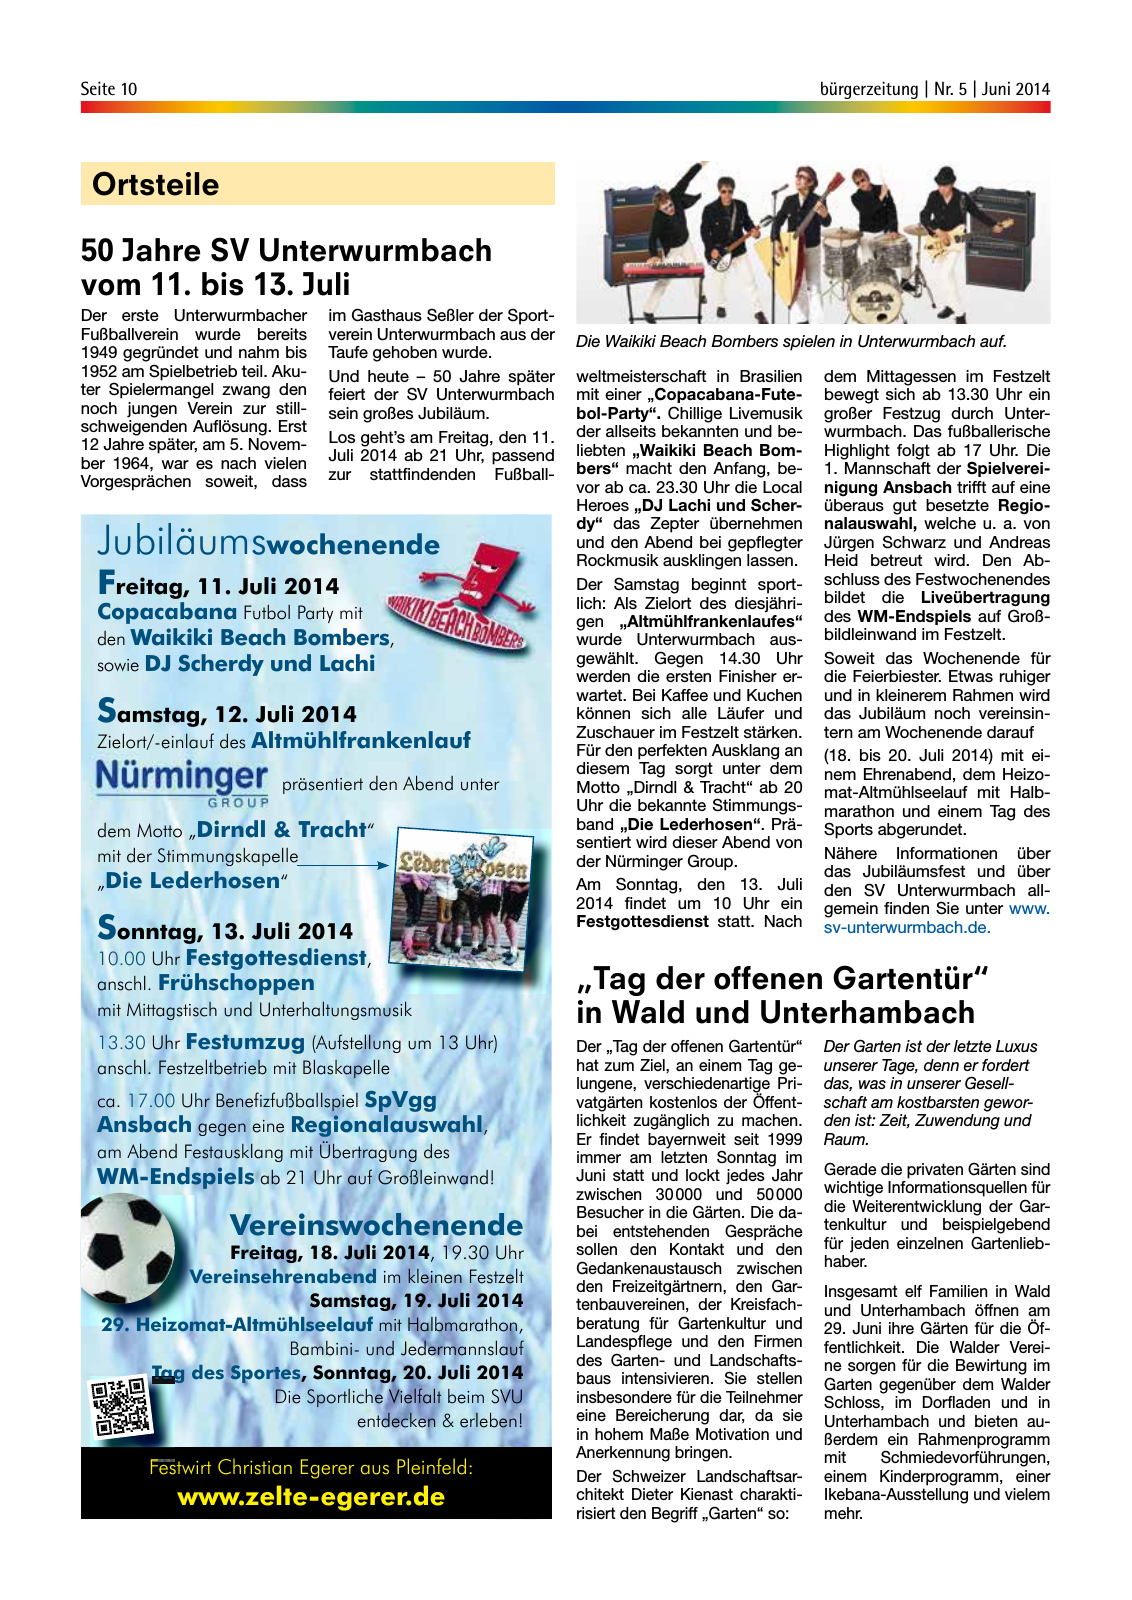 Vorschau buergerzeitung_Nr_5_Juni_2014 Seite 10